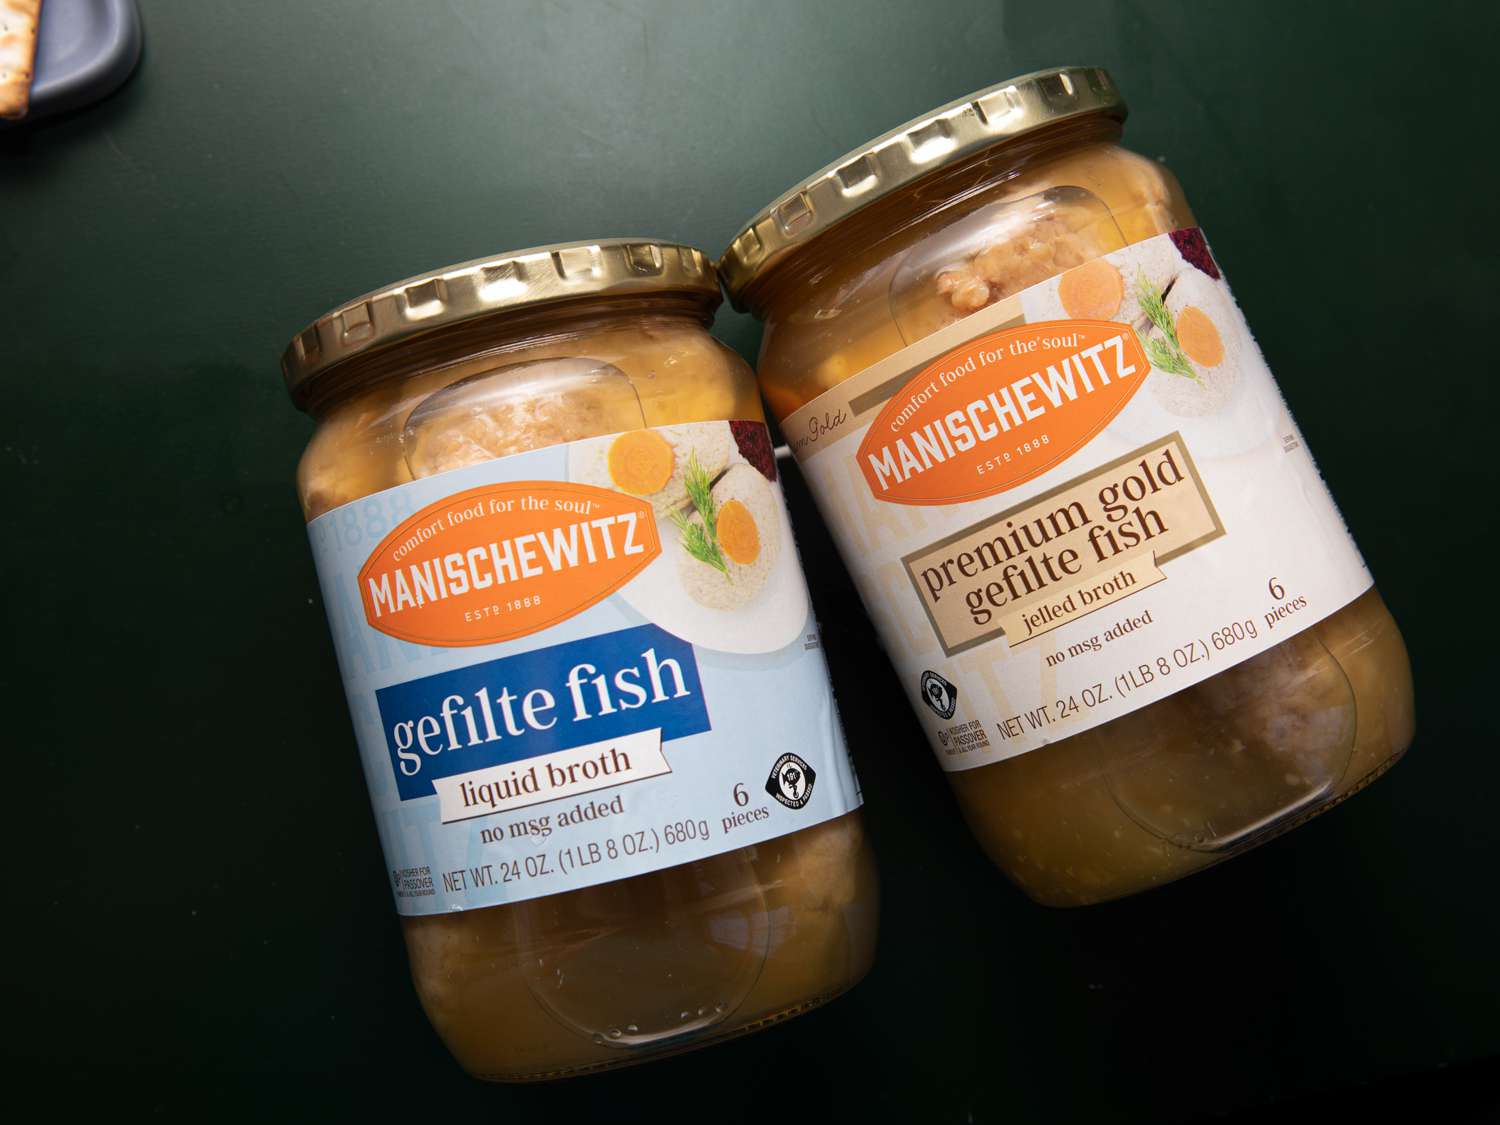 Two jars of Manischewitz brand gefilte fish